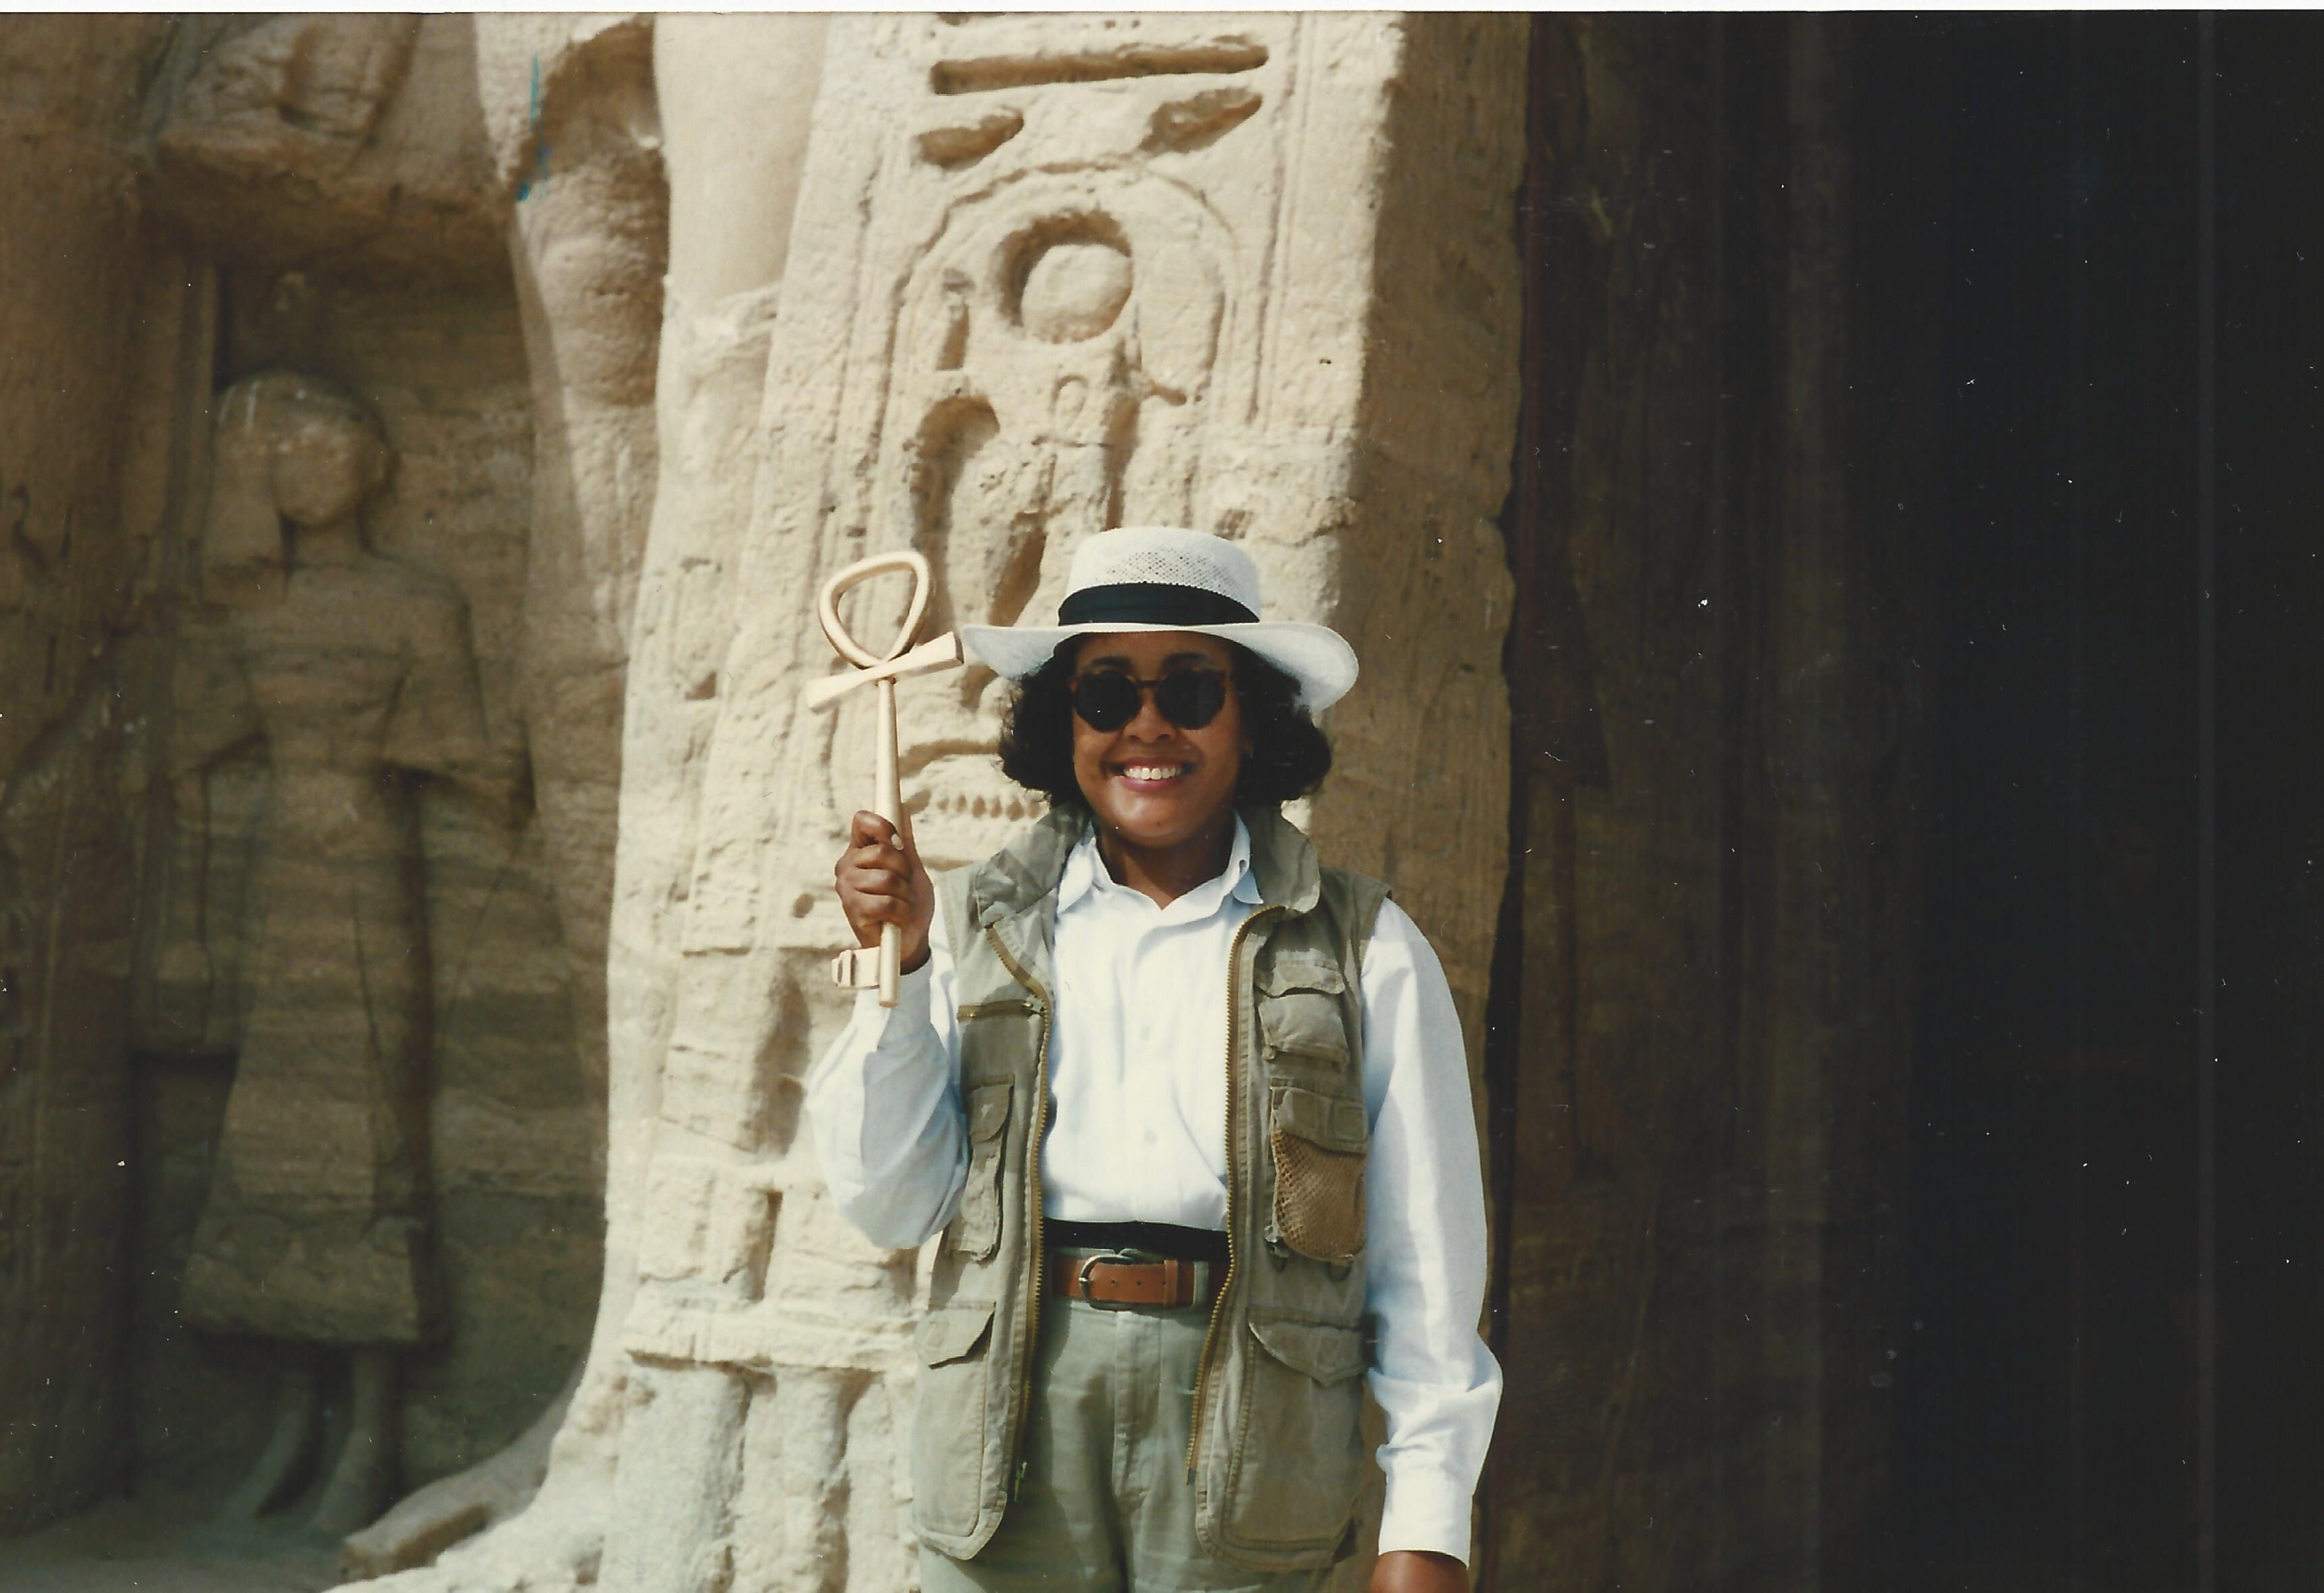 Gail Campbell Woolley in Ägypten, 1996. Abu Simbel-Tempel. Gail hält ein Ankh oder das Symbol des "Schlüssels des Lebens".